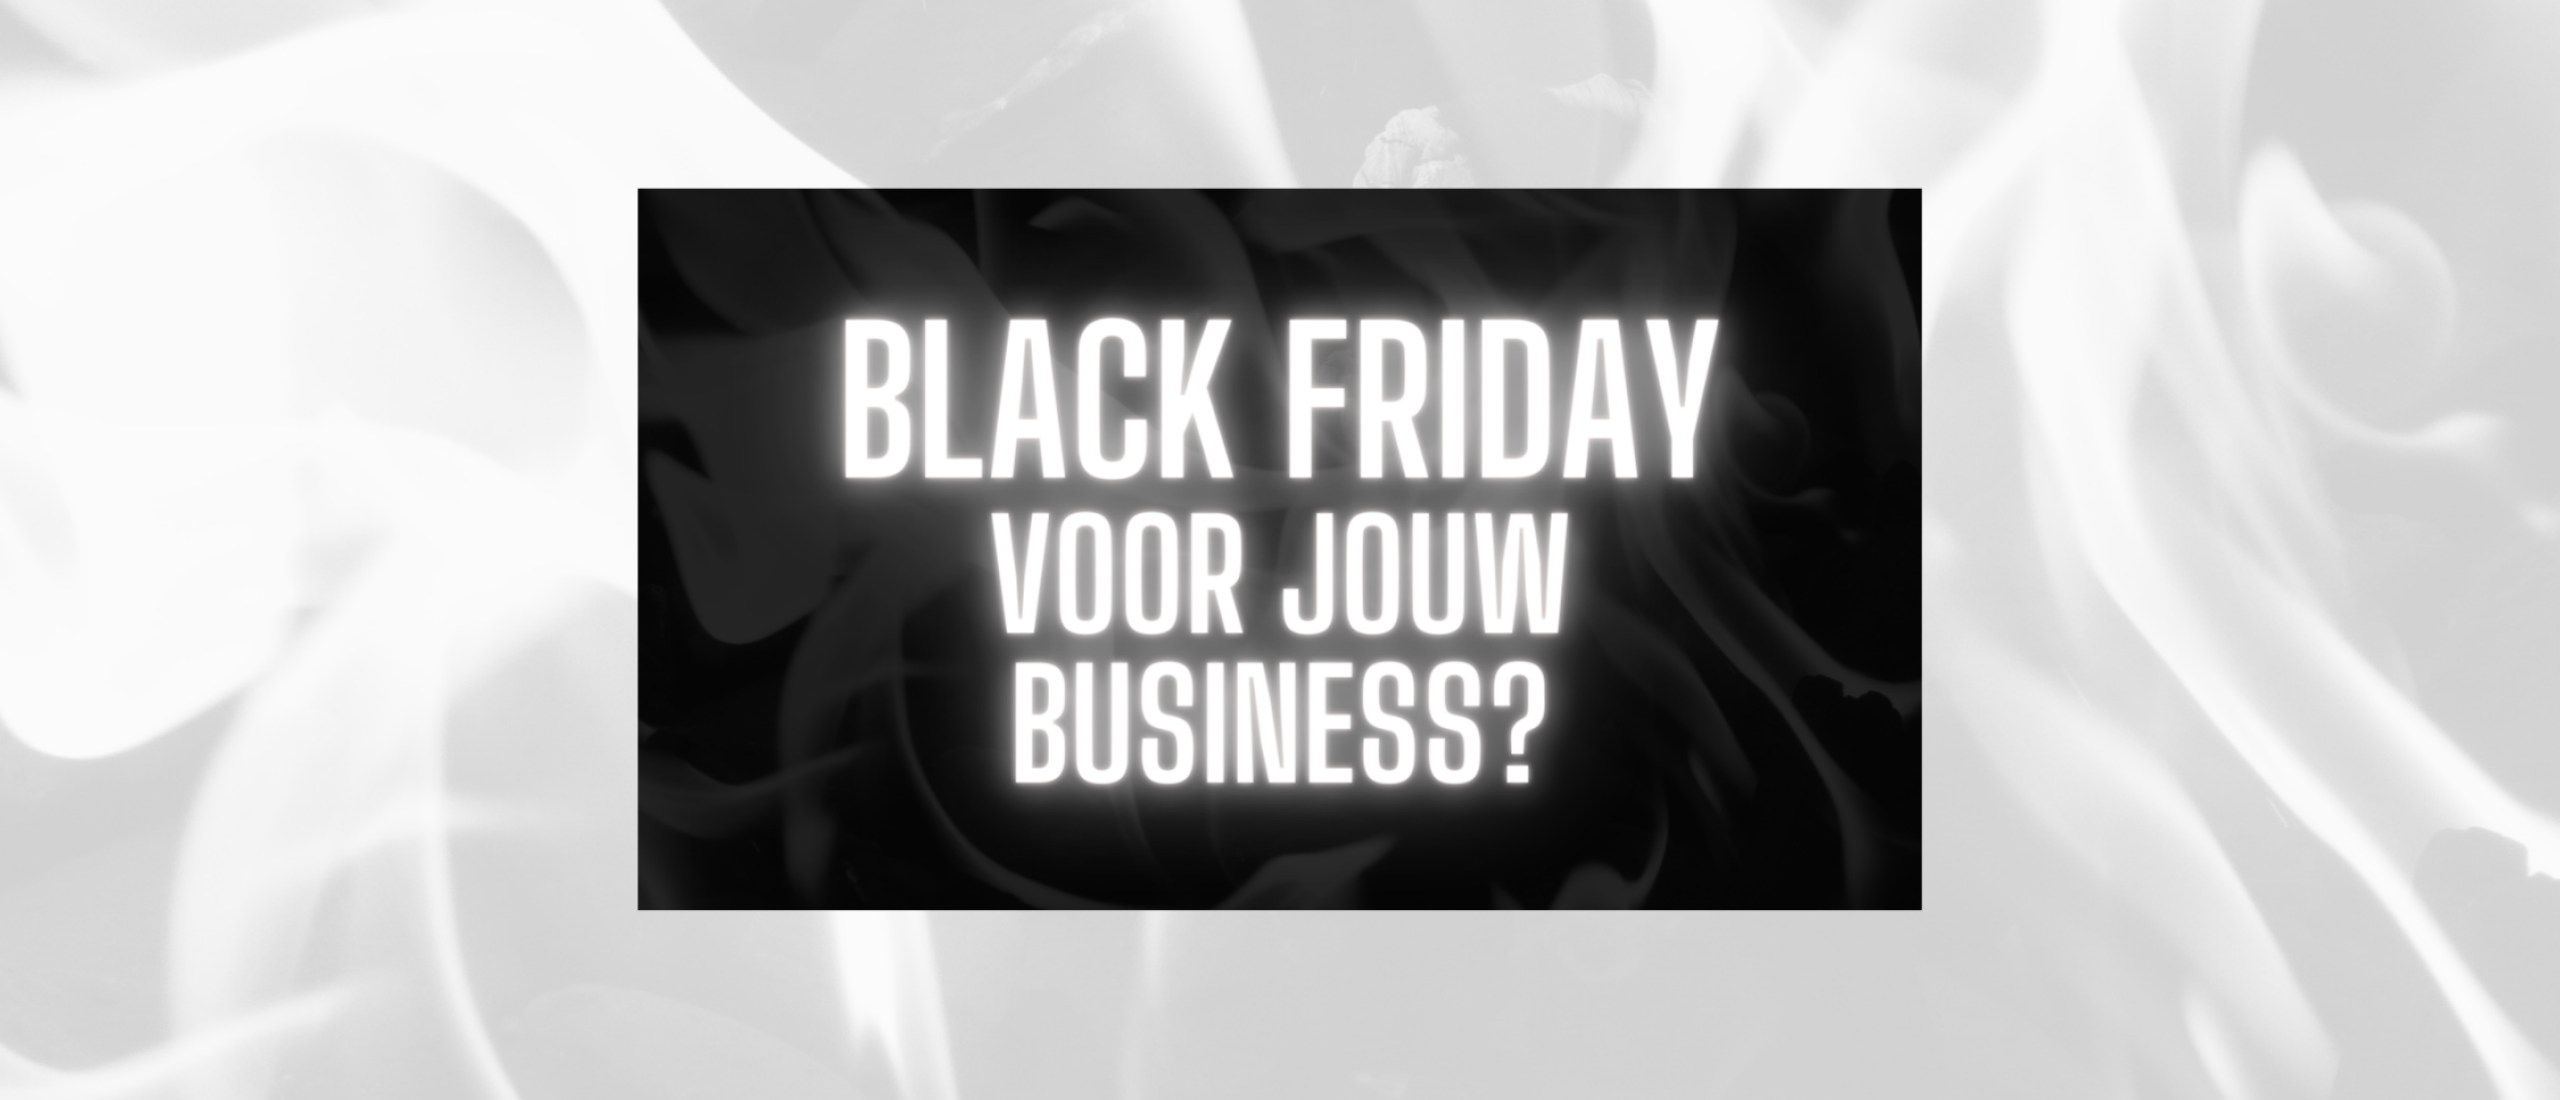 Black Friday voor jouw business?